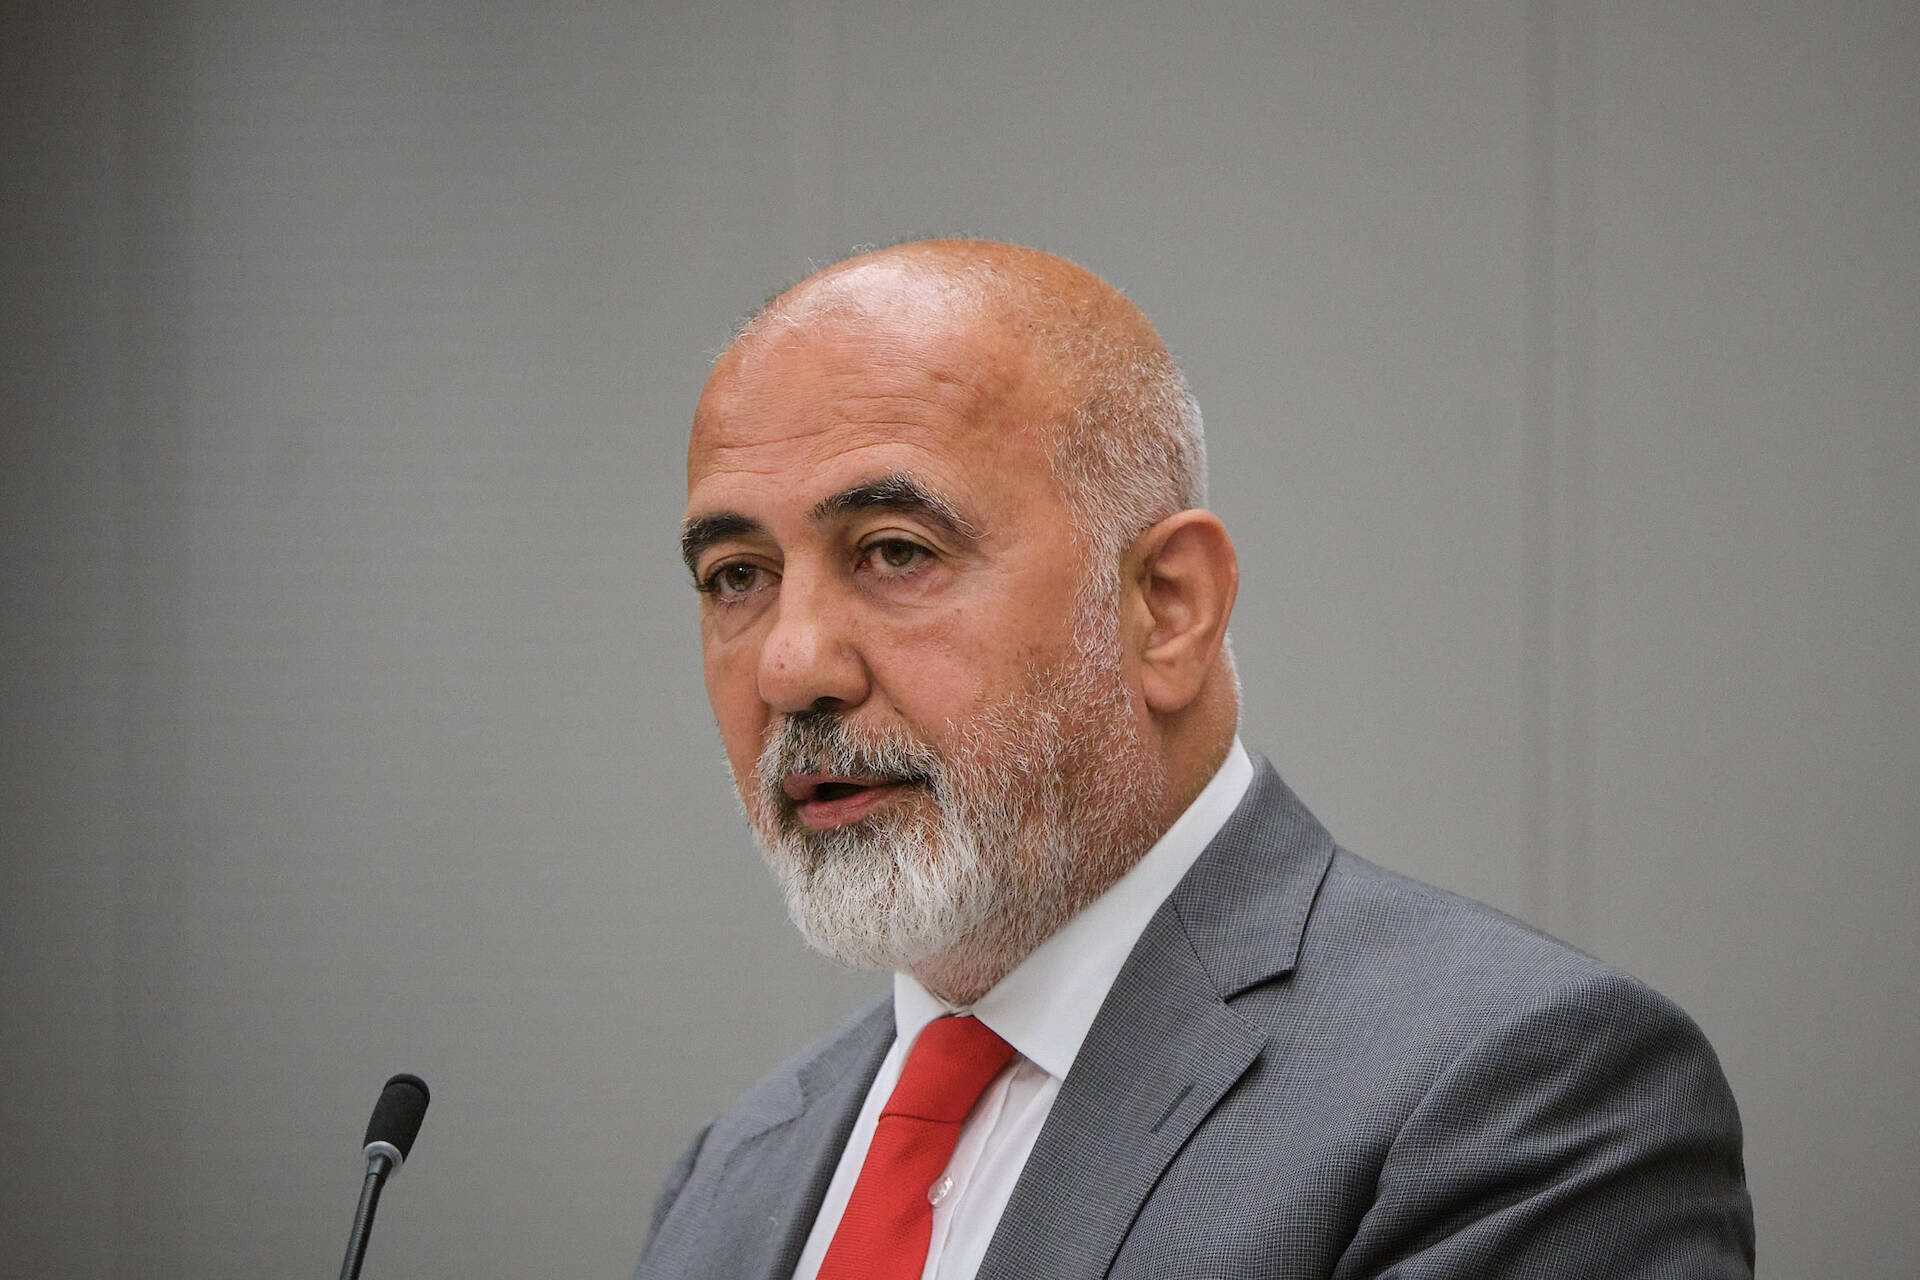 Senator Karakus (PvdA)